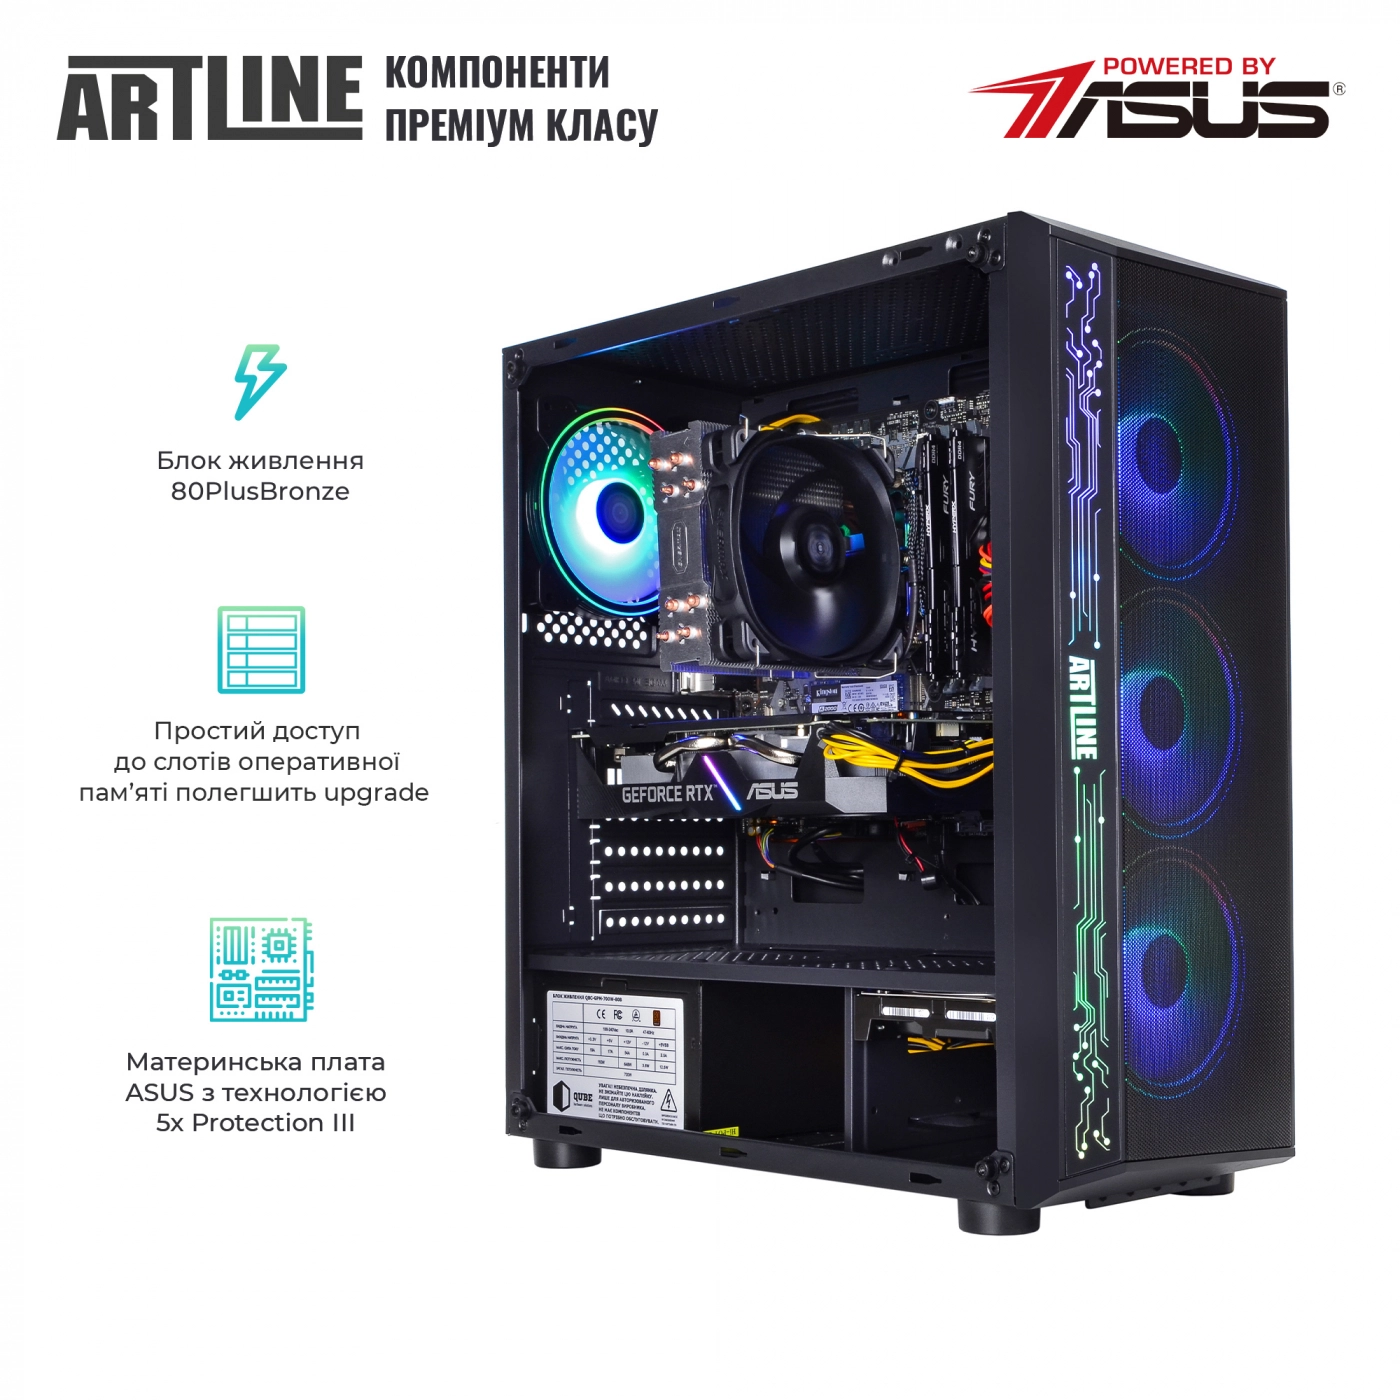 Купить Компьютер ARTLINE Gaming X53v36 - фото 2